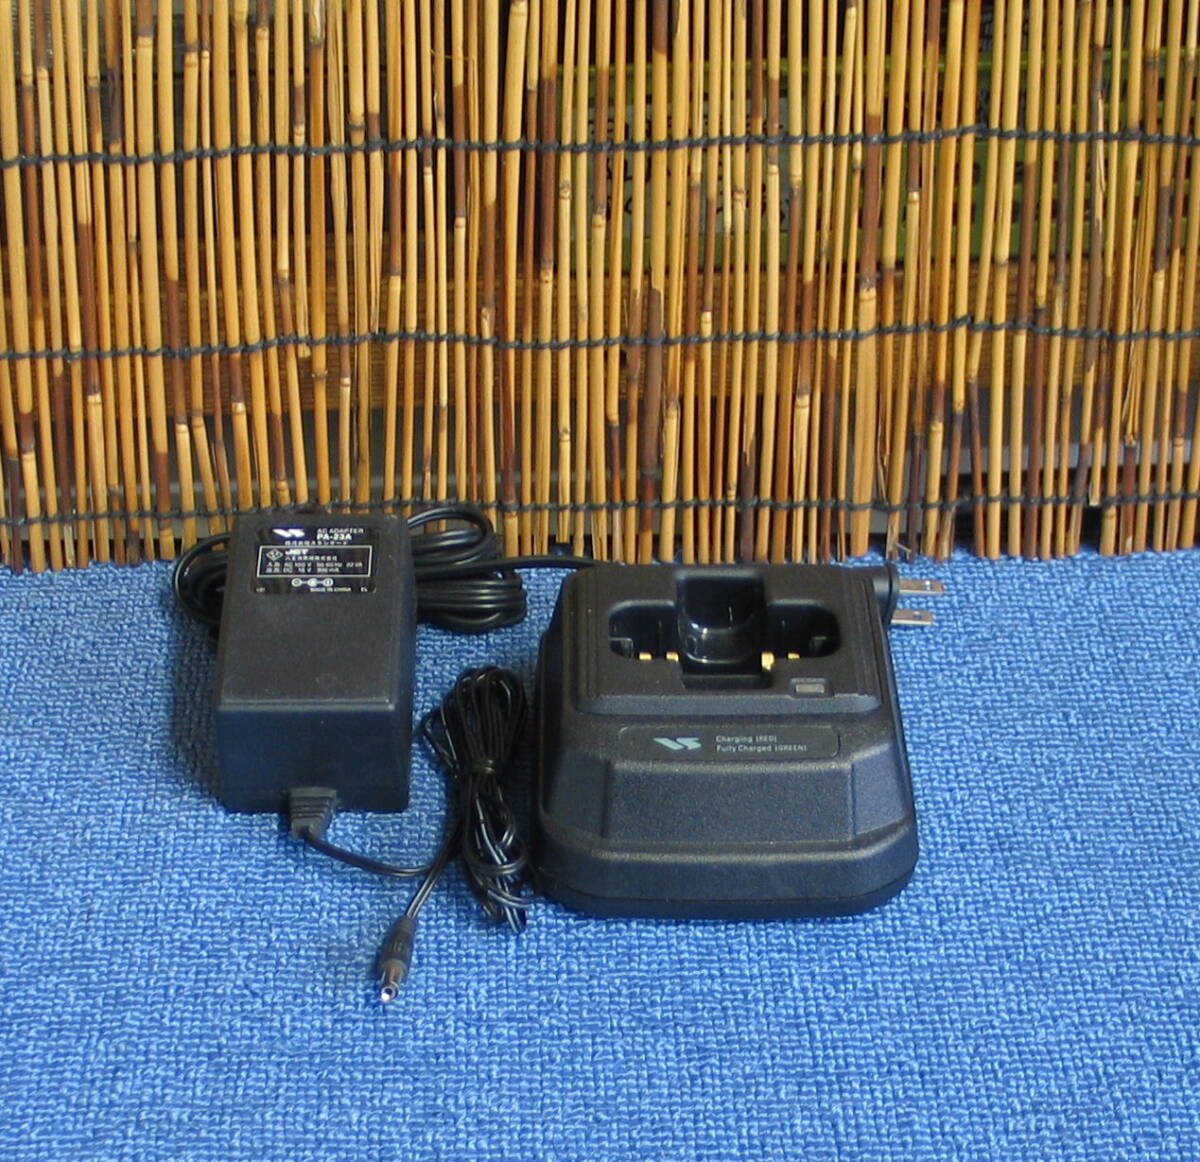 STANDARD VLM-850. автомобильный MBL88 особый маленький электроэнергия / одновременно телефонный разговор беспроводной связь система 18CH G3601mlb